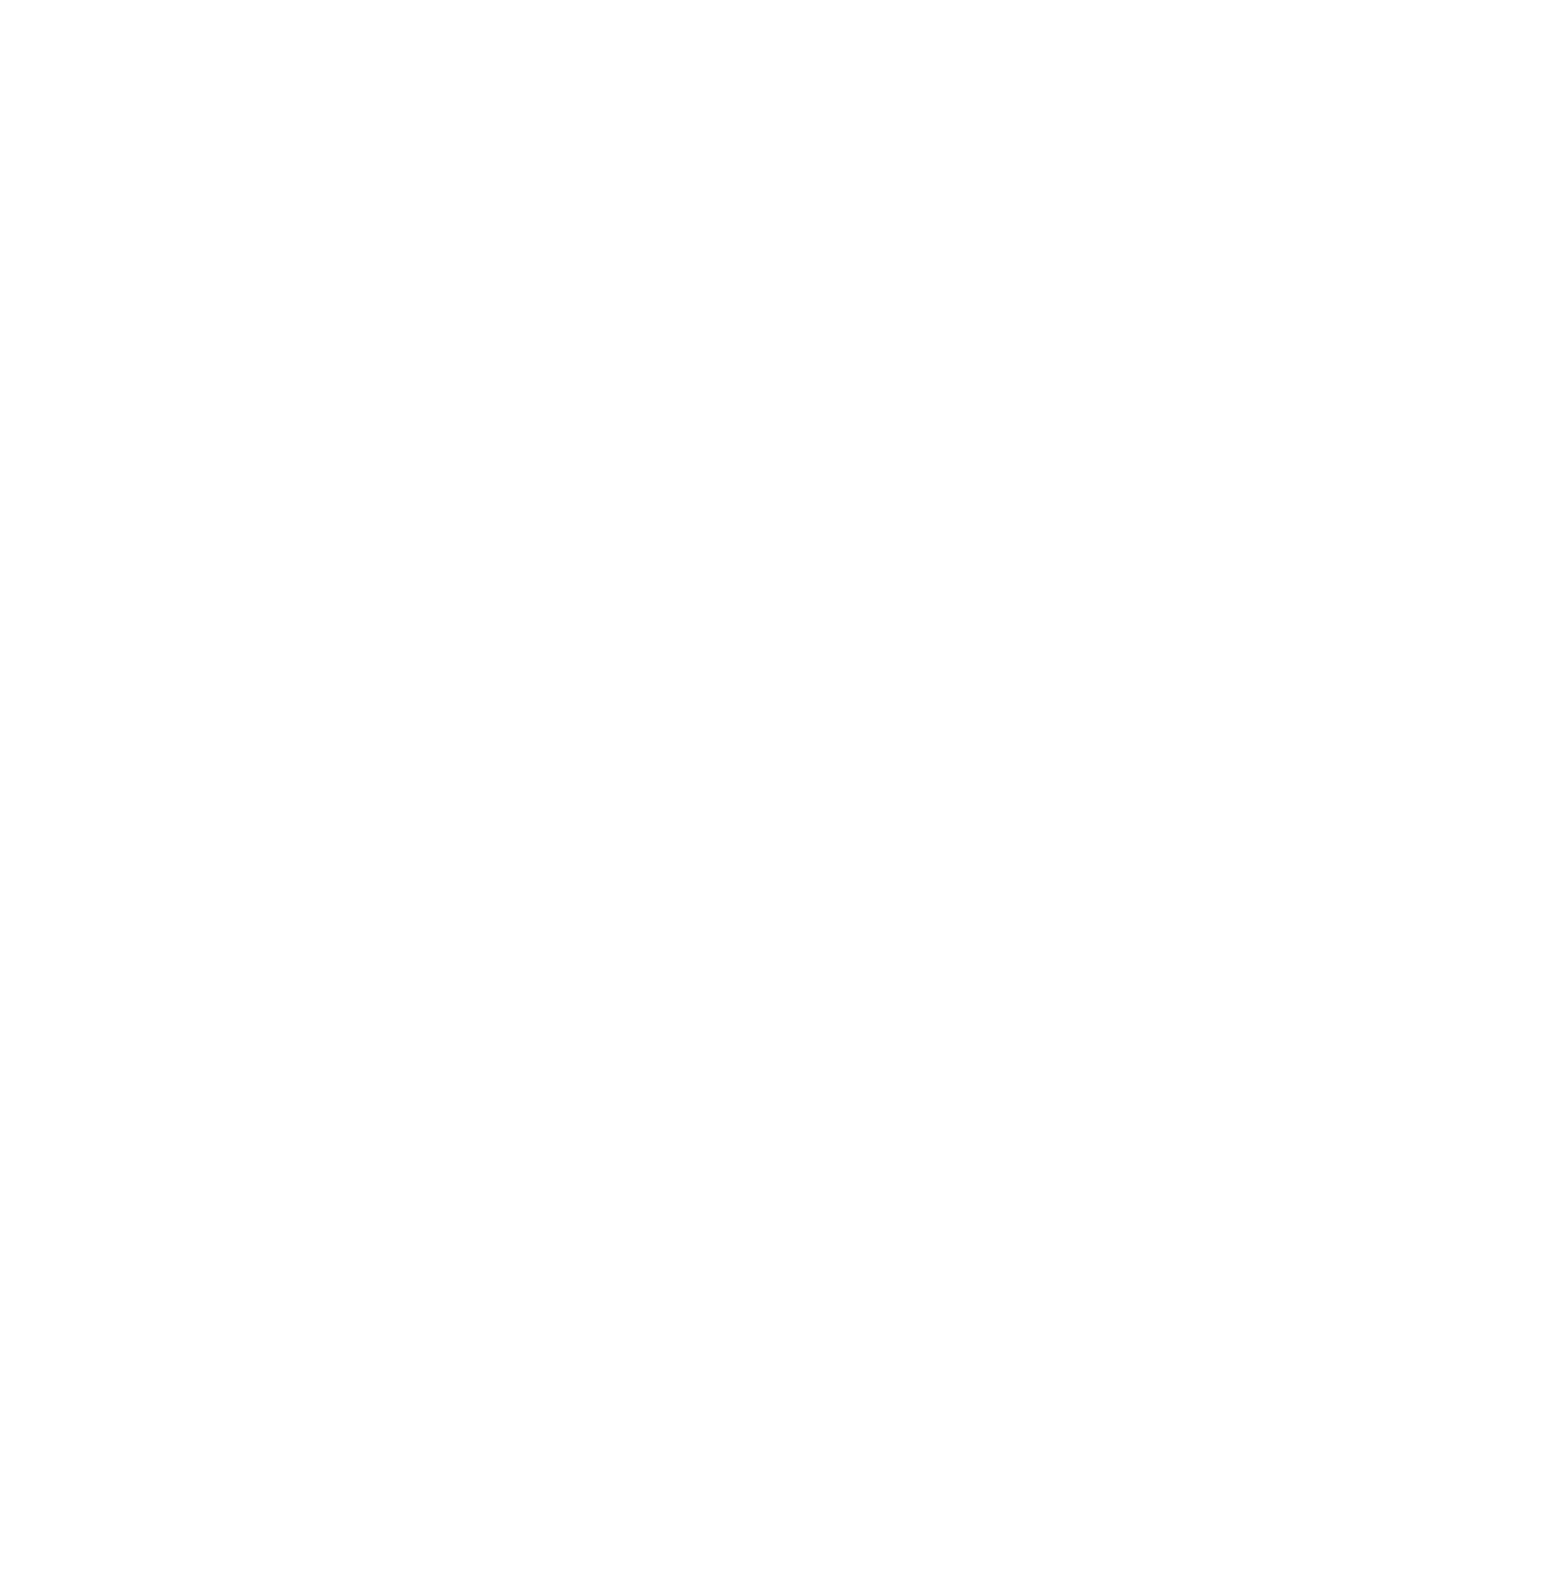 Glencore logo pour fonds sombres (PNG transparent)